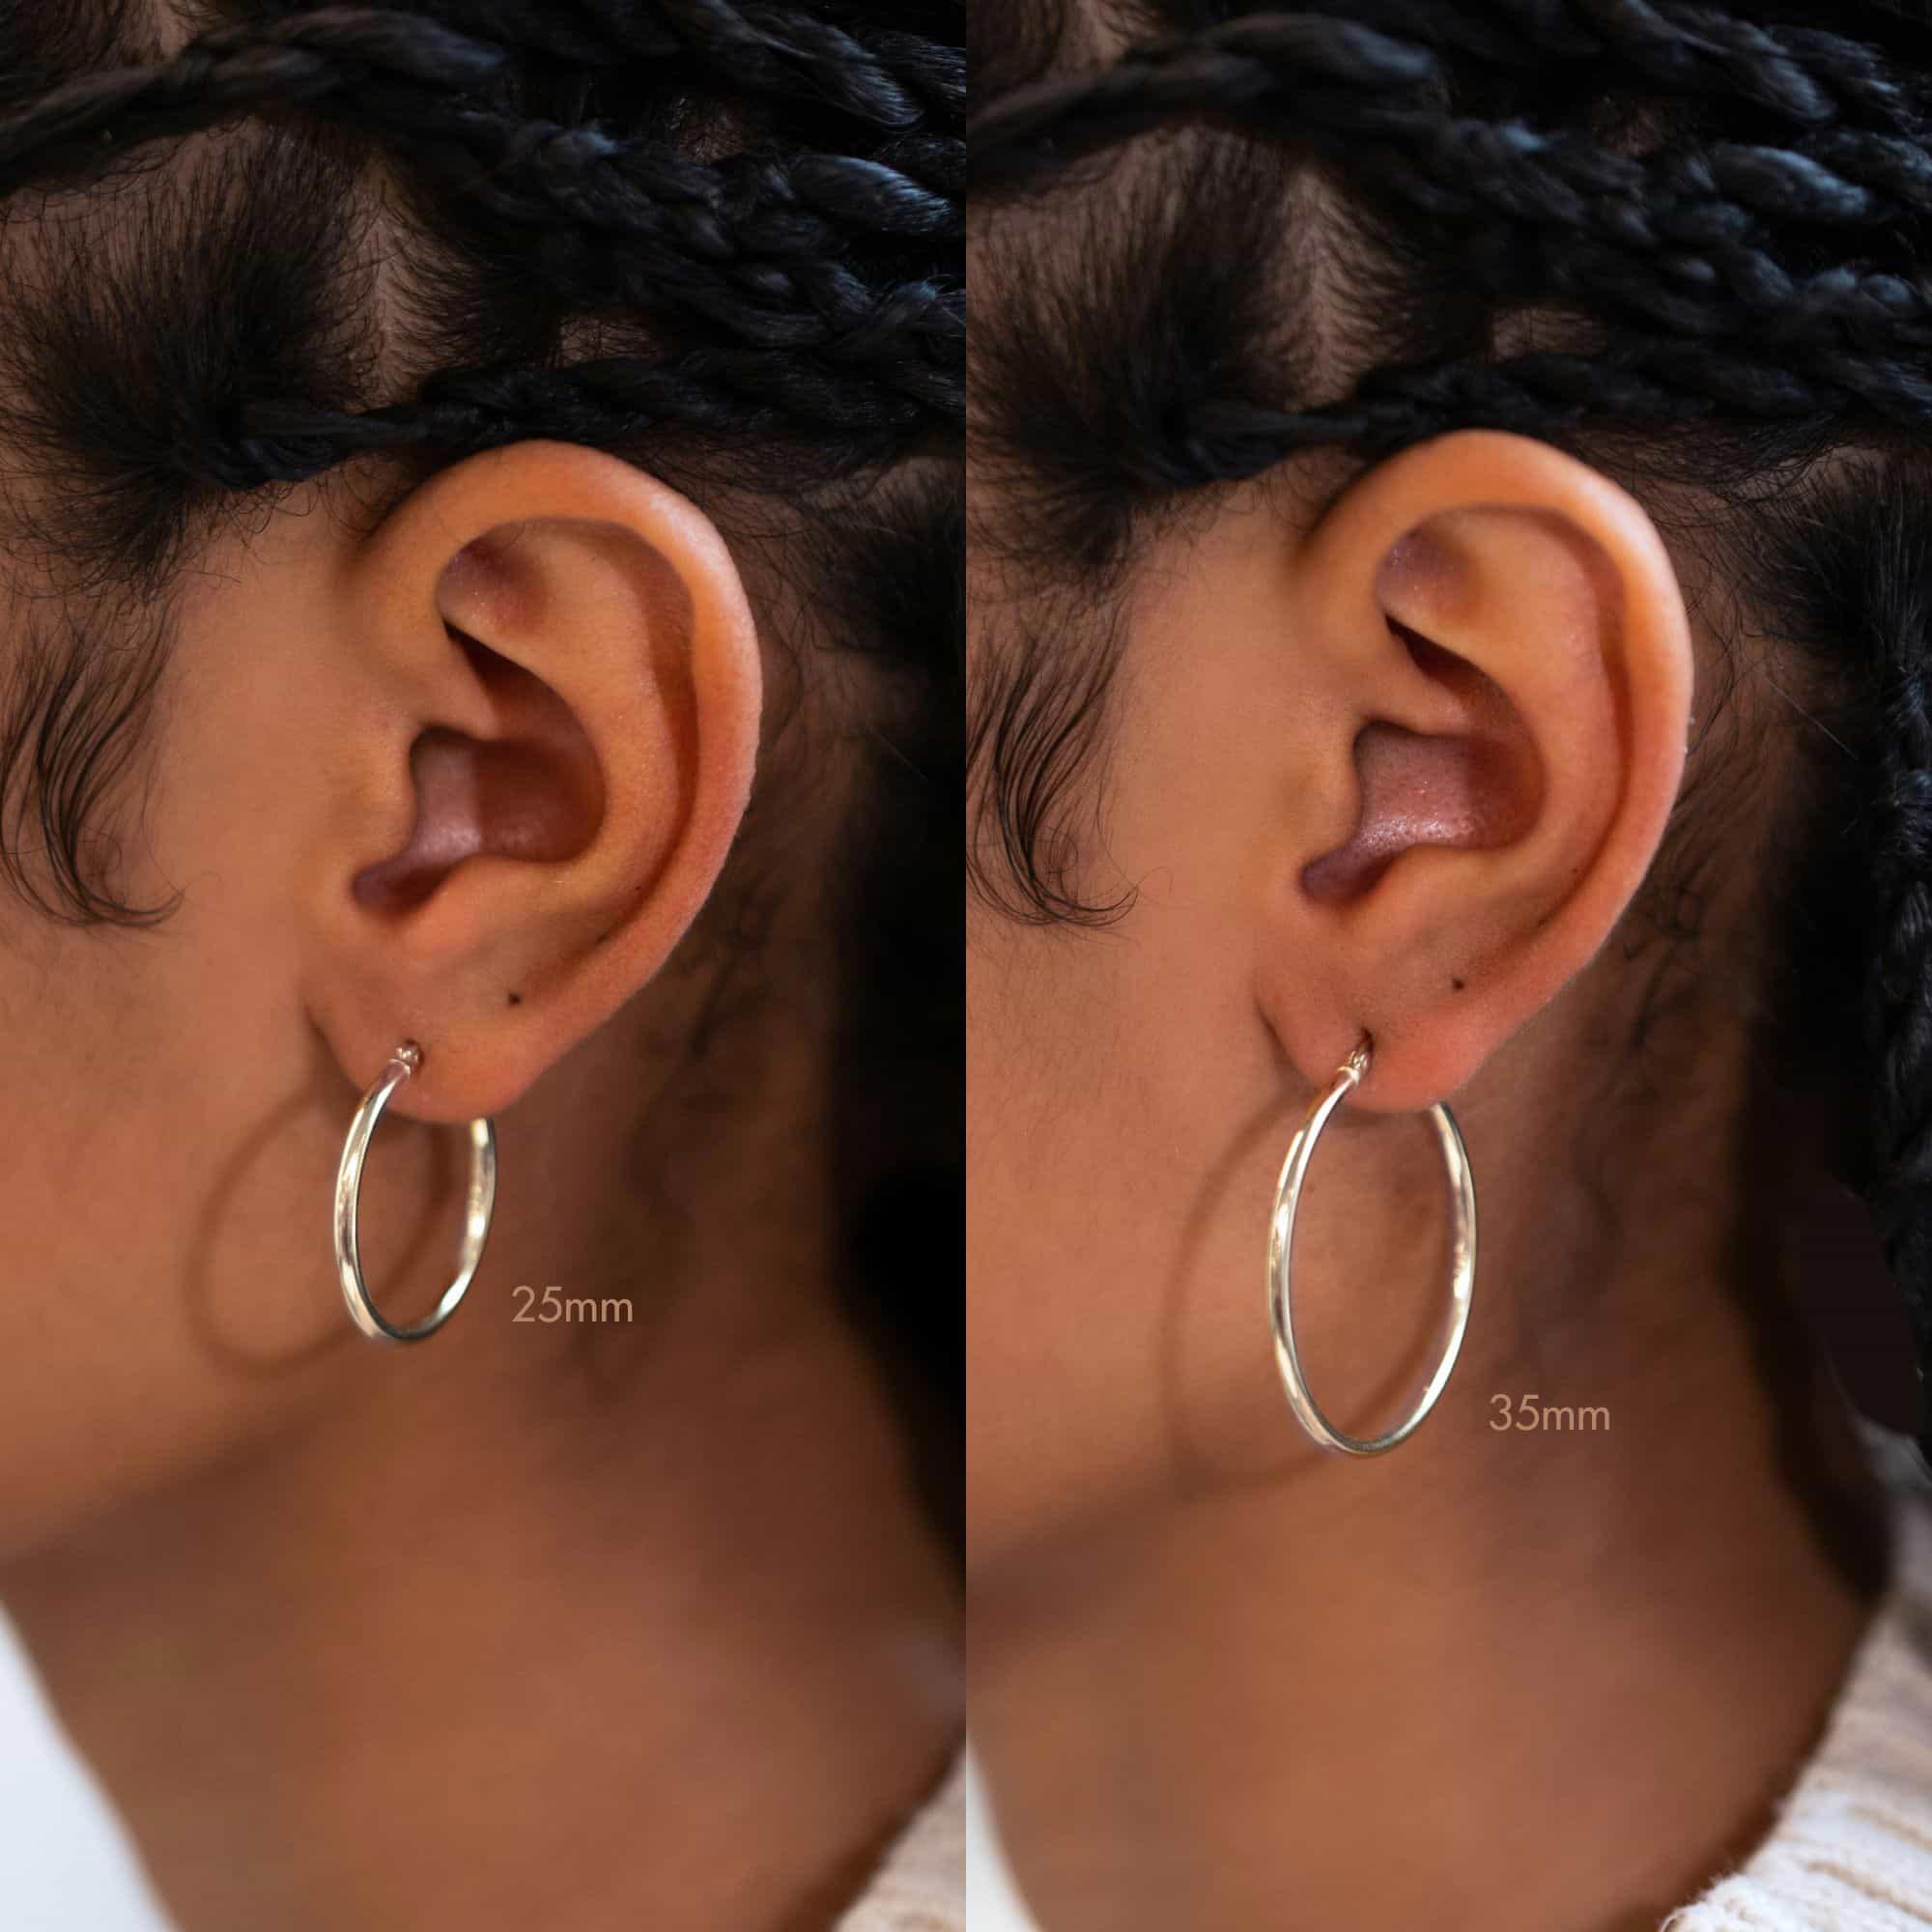 Earring Holder Organizer for Large Hoops & Statement Earrings